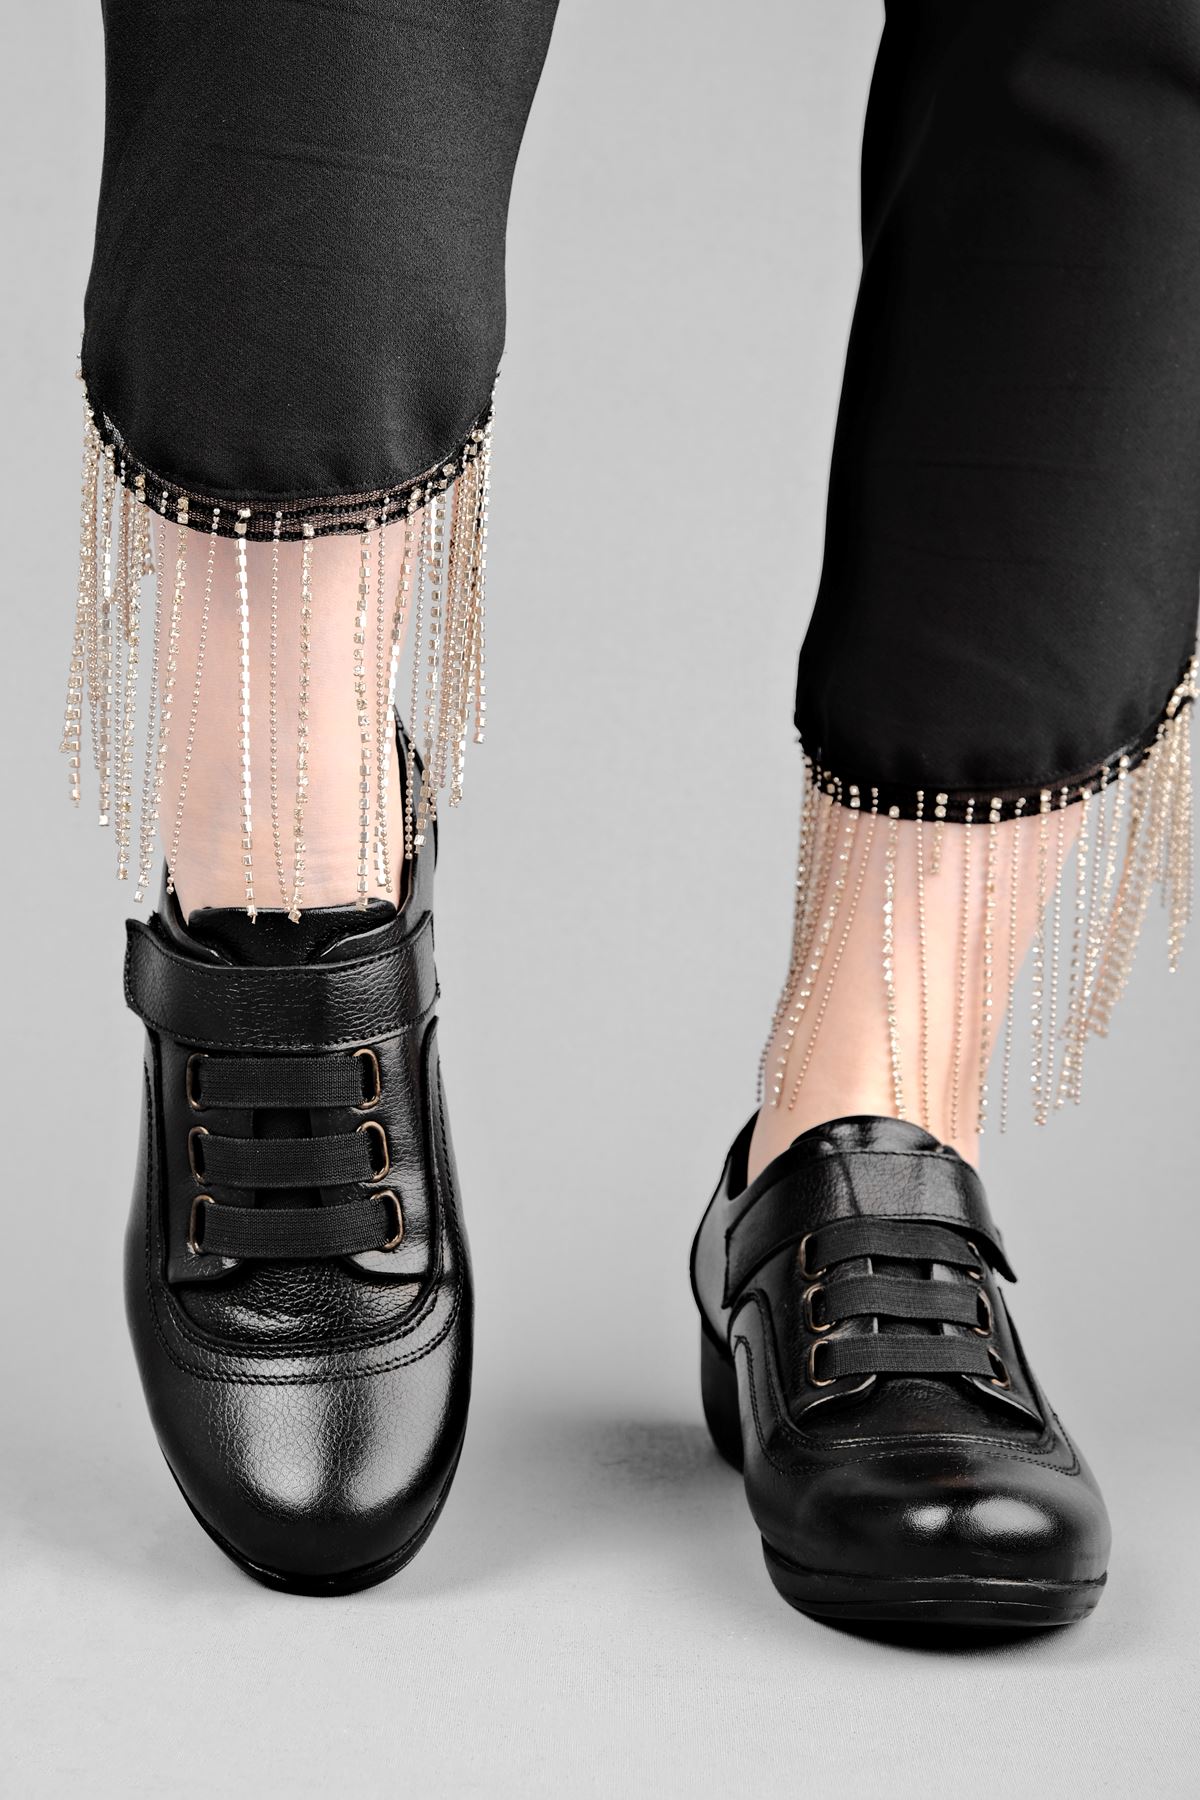 Mera Kadın Dolgu Topuk  Hakiki Deri Ayakkabı Bantlı-siyah